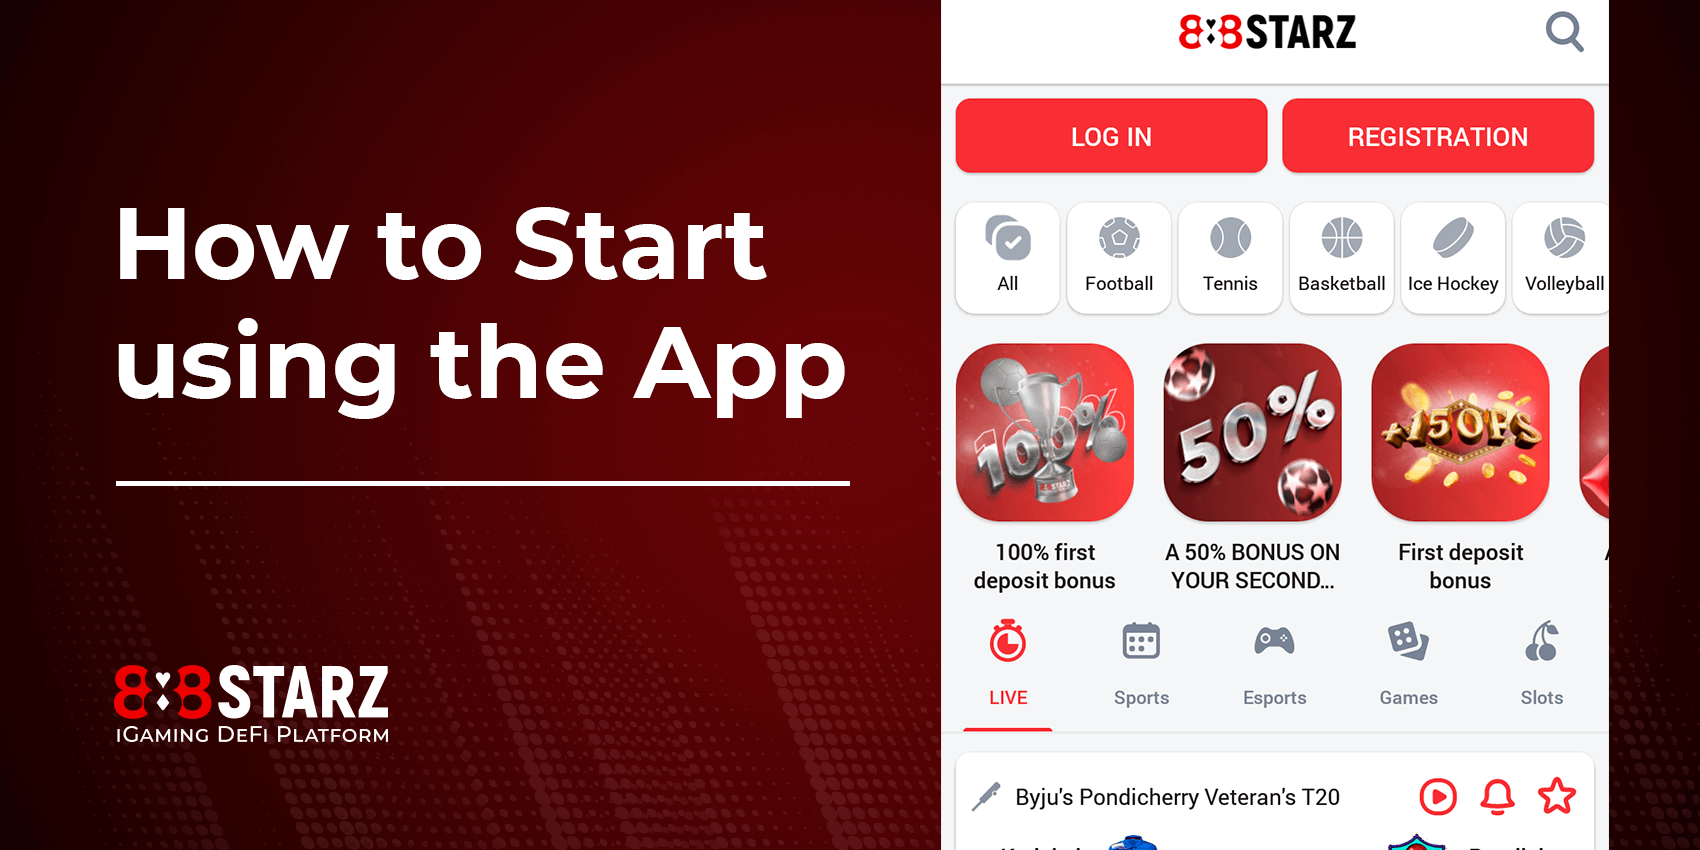 Comment commencer à utiliser l'application 888Starz ?